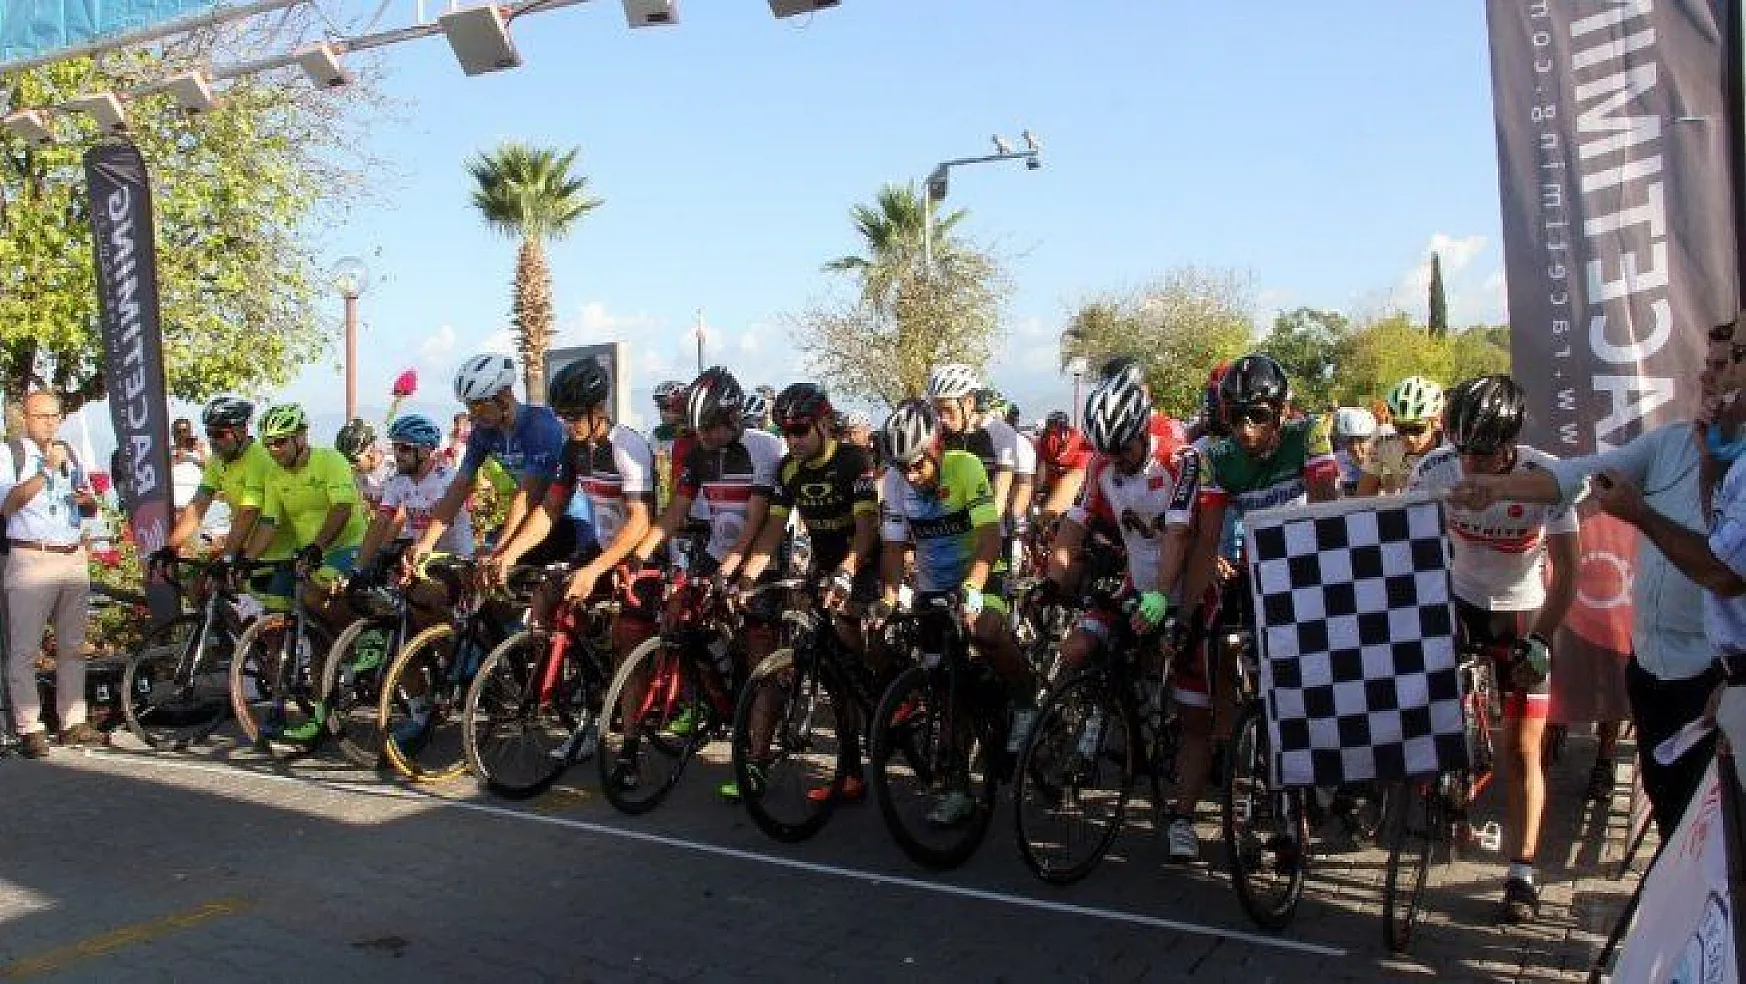 Uluslararası Fethiye Spor Festivali'nde gerçekleştirilen bisiklet yarışı heyecanlı geçti